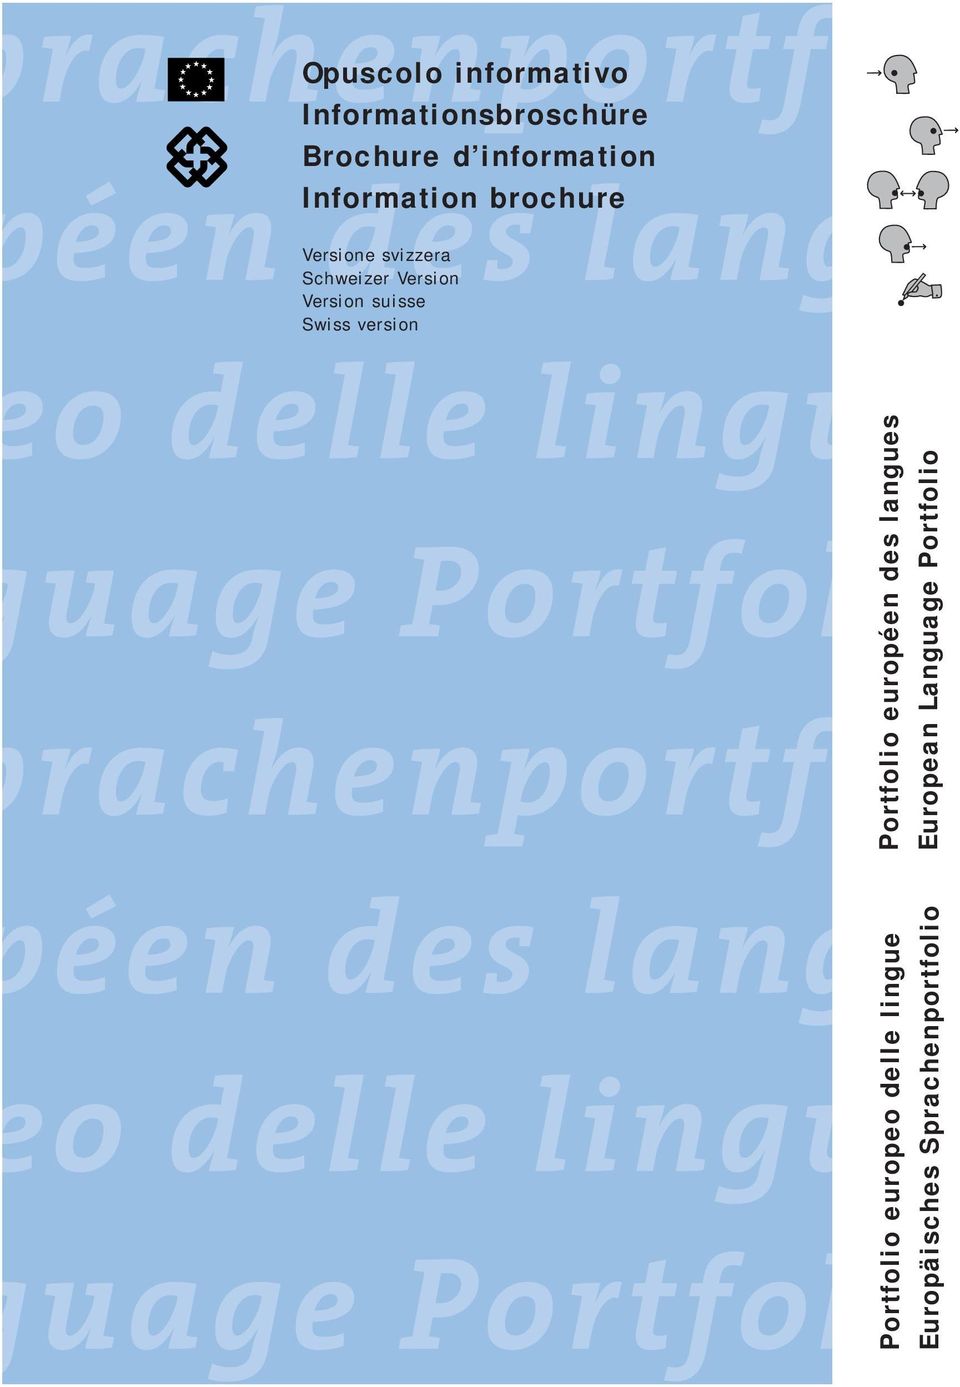 lingue Portfolio européen des langues European Language Portfolio guage Portfolio prachenportfoli